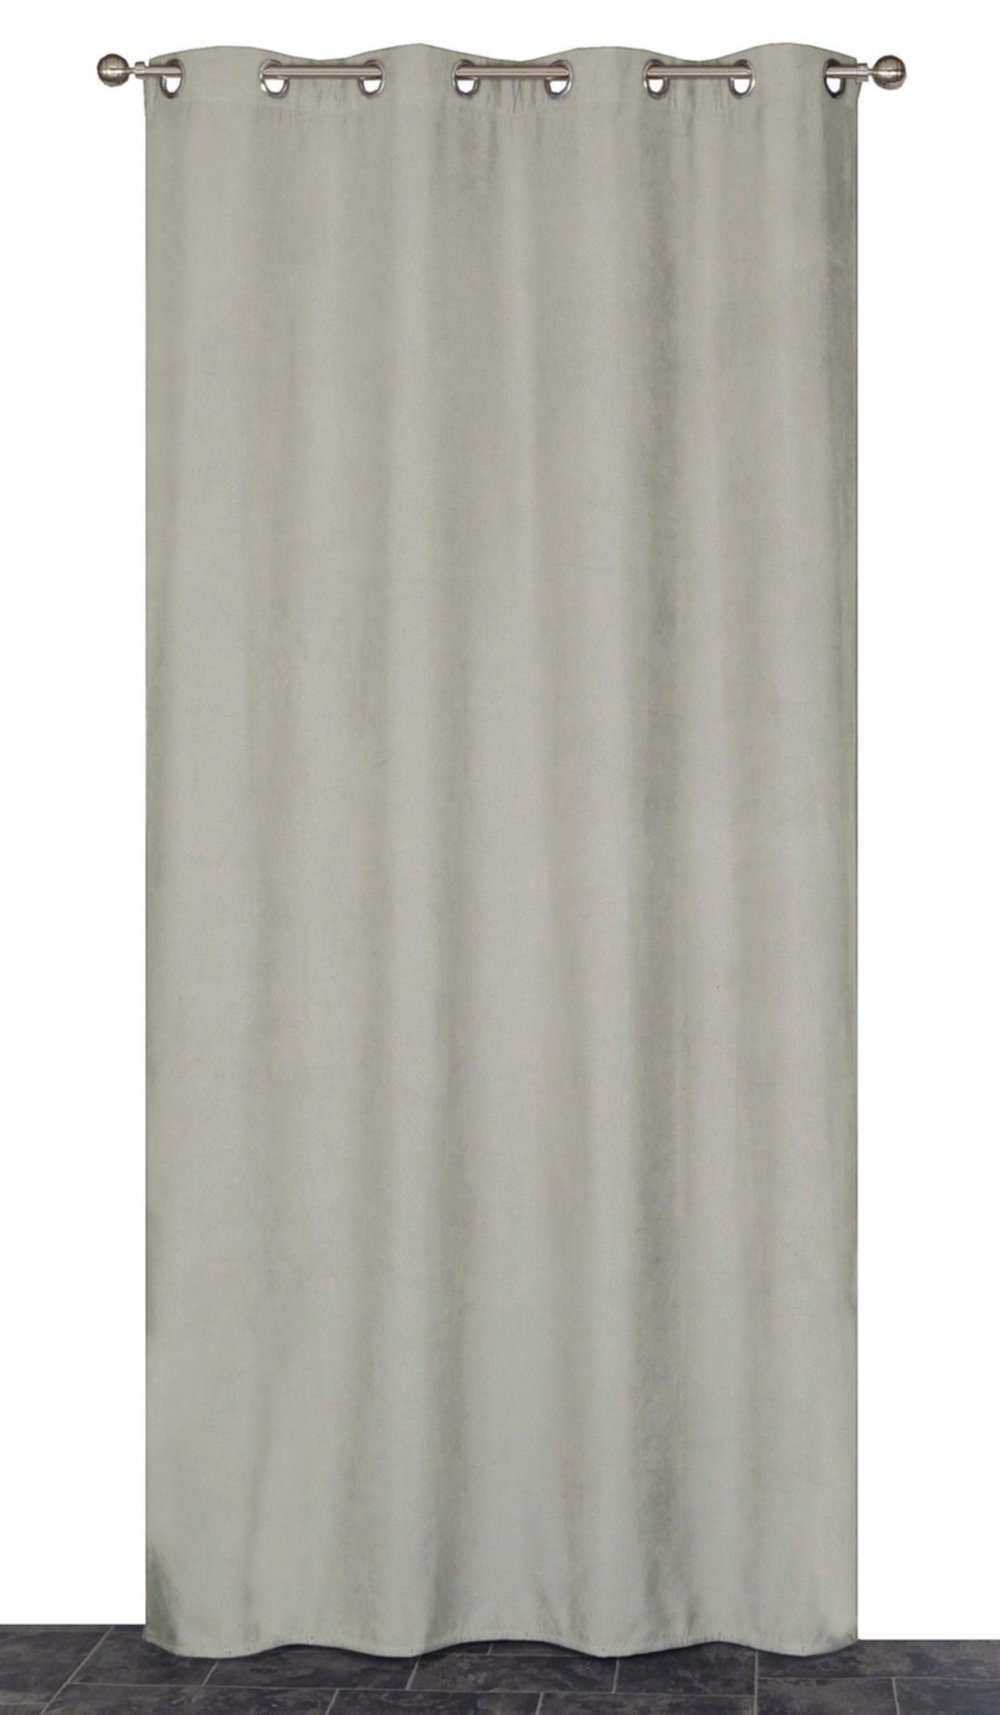 Rideau thermique gris 140x240cm - DYLREV